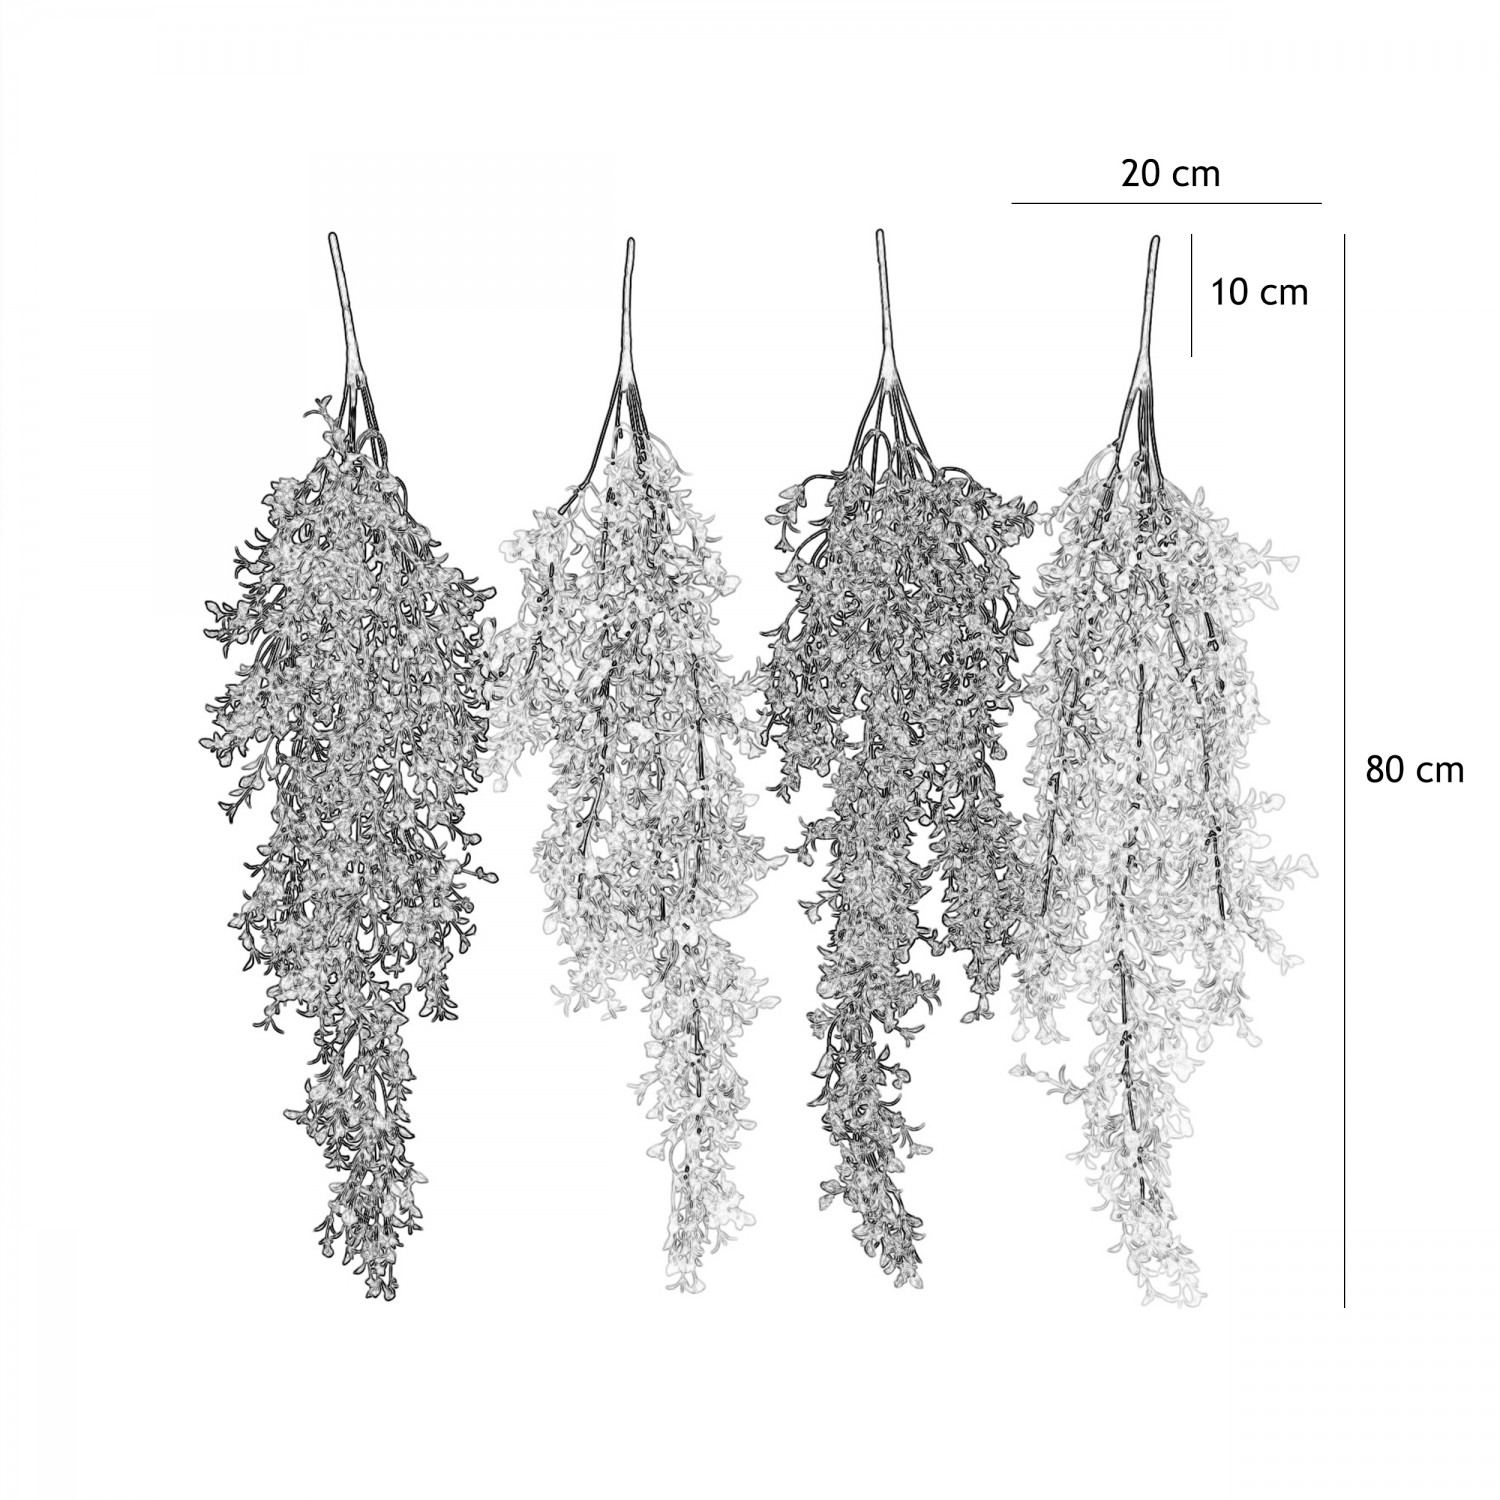 Chute plante artificielle 80cm lot de 4 graphique avec les dimensions